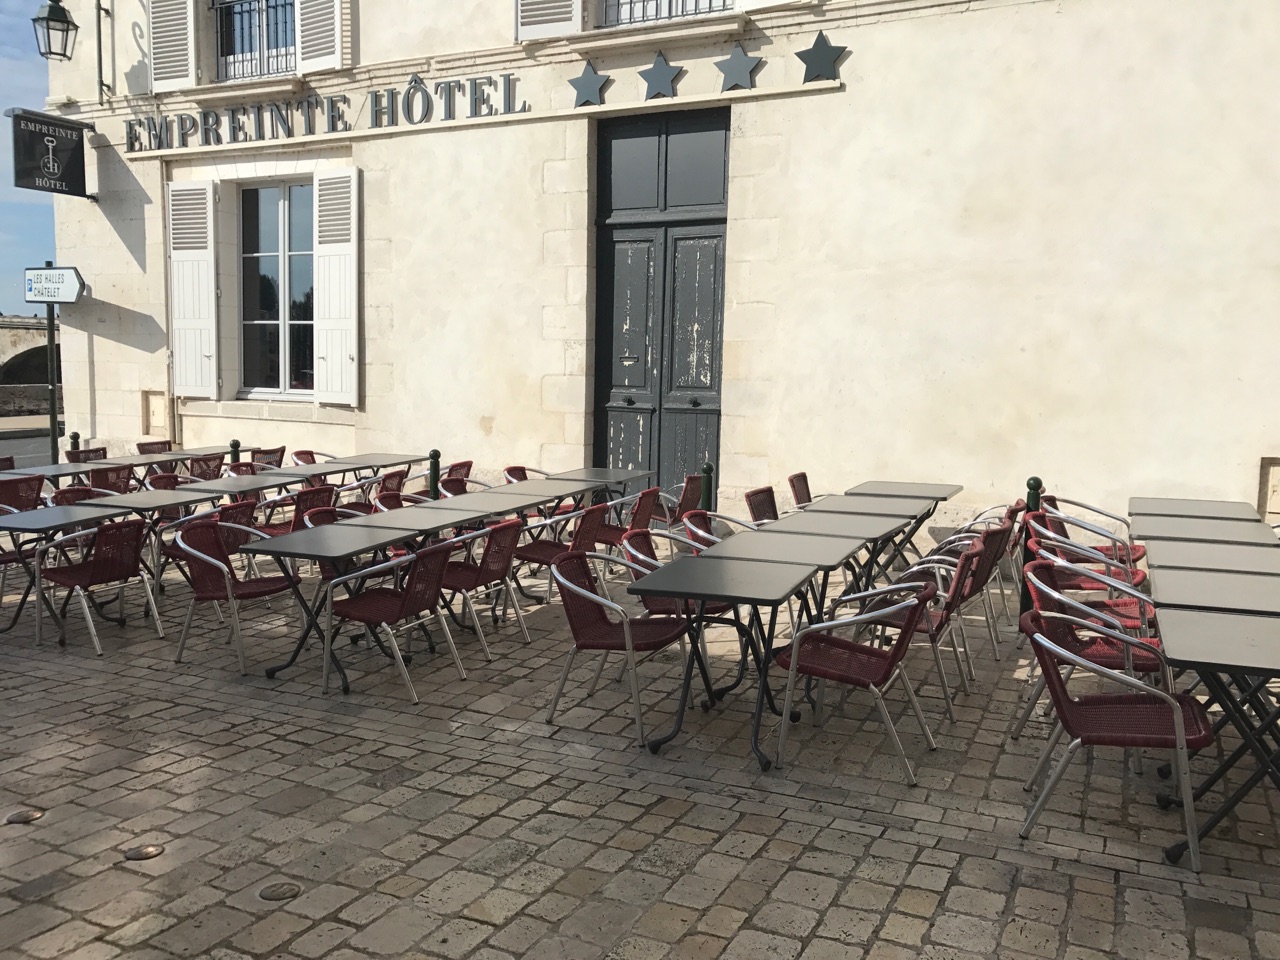 Festival de Loire 2017 : Empreinte Hôtel ouvre une terrasse extérieure